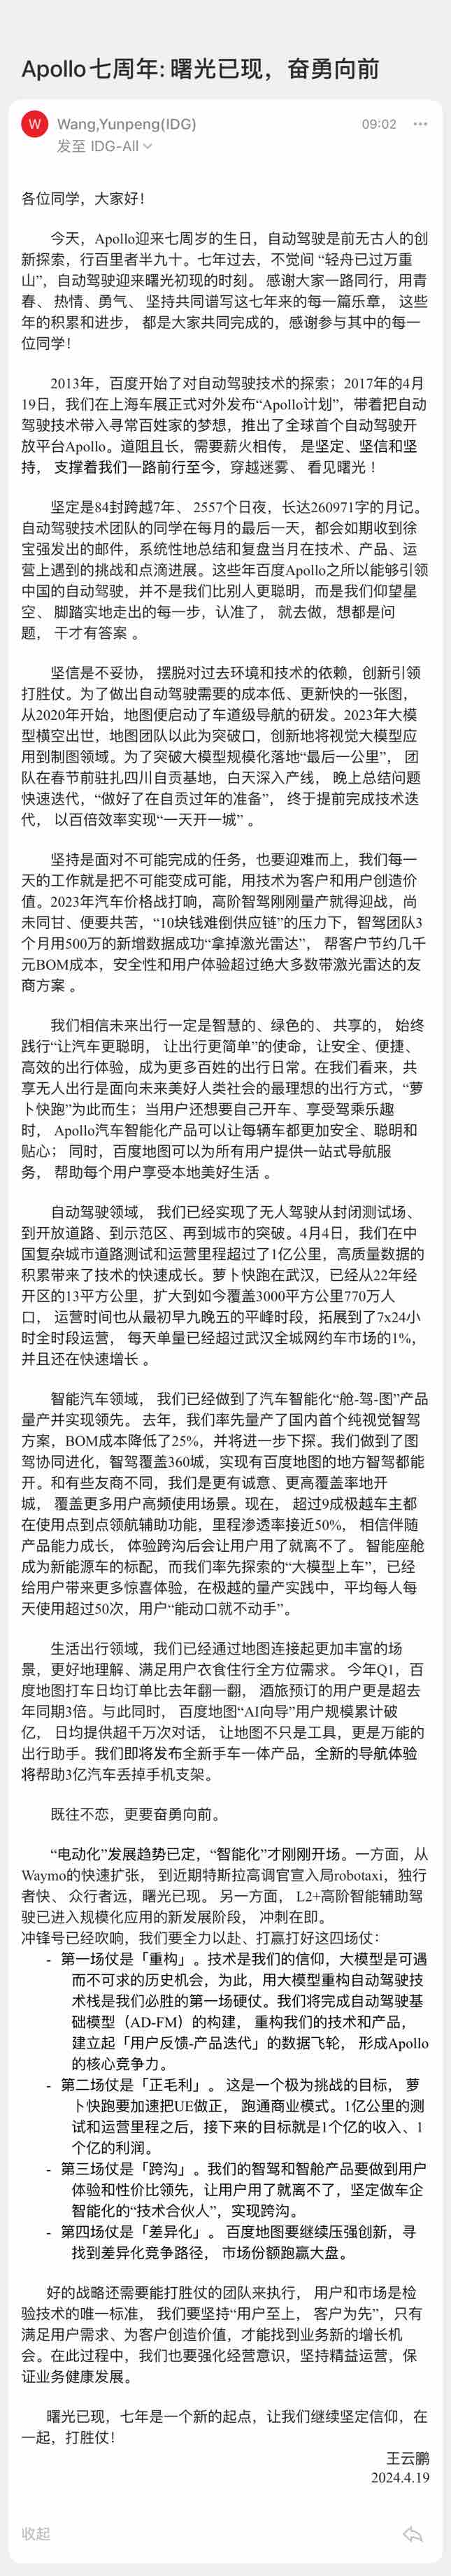 百度智驾总裁王云鹏：将发布手车一体地图产品，让3亿汽车扔掉手机支架